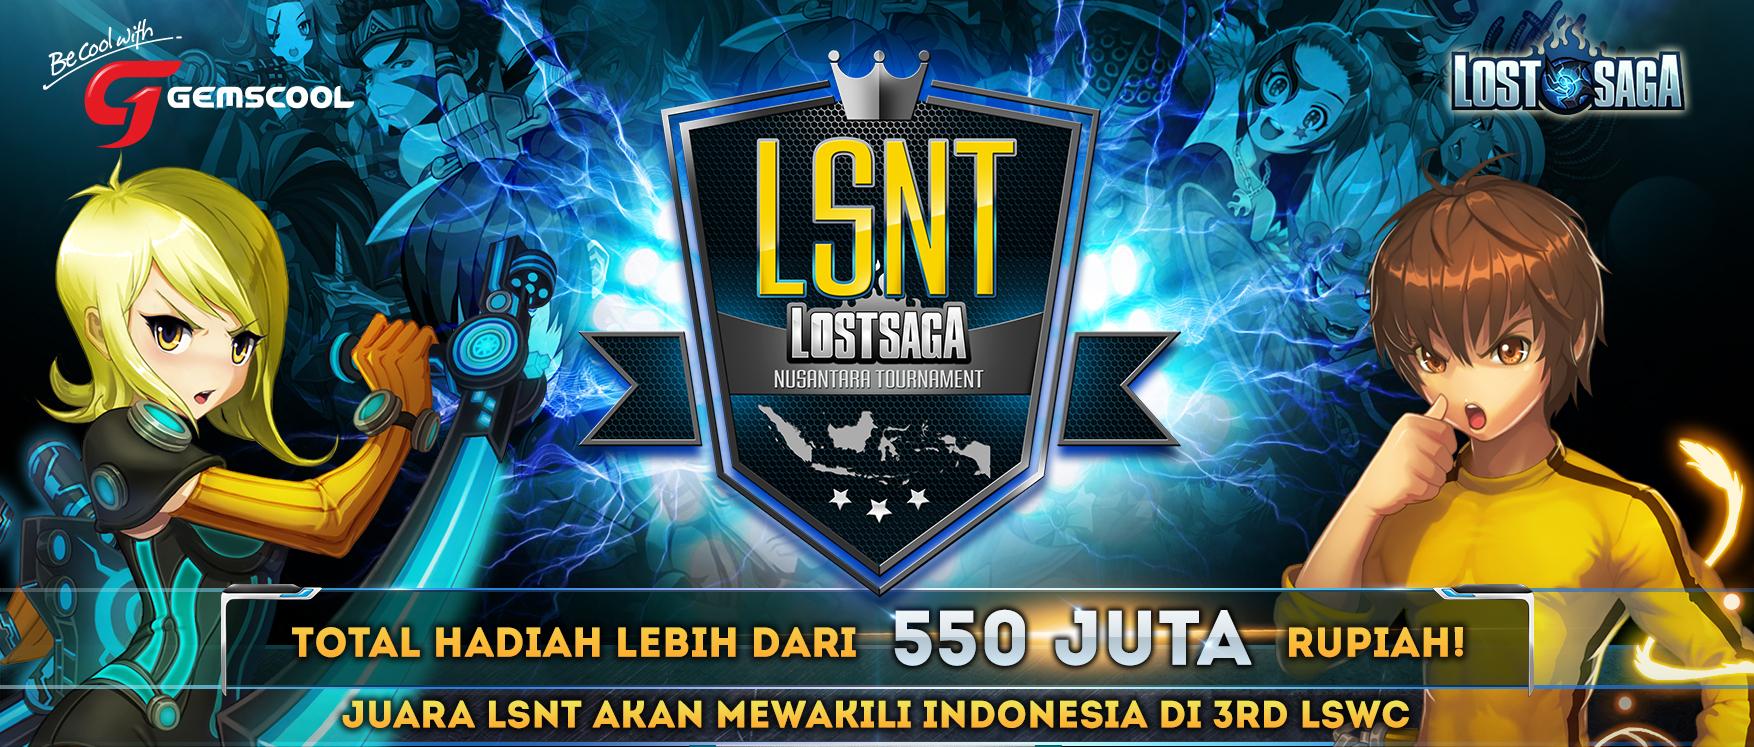 Gemscool Adakan Lost Saga Tournament di Berbagai Kota Besar Indonesia!